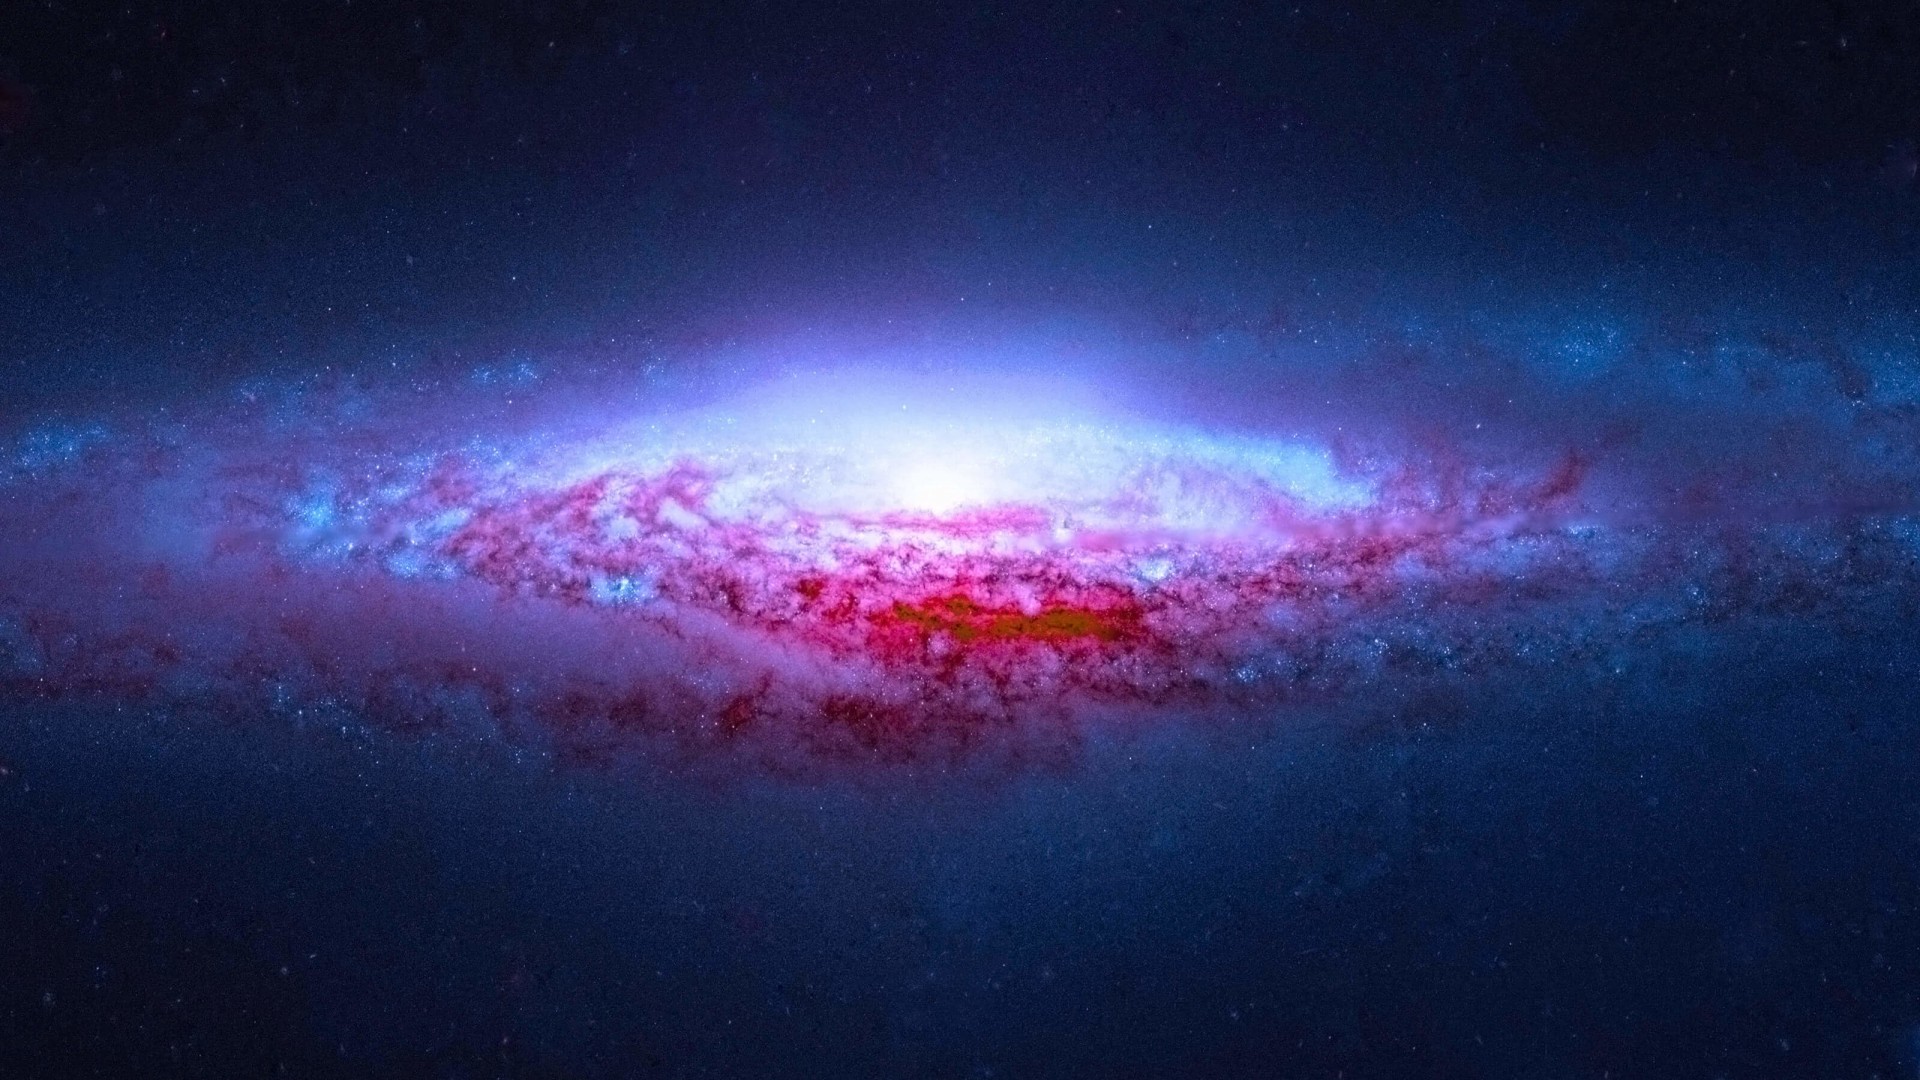 NGC 2683 Spiral Galaxy Wallpaper for Desktop 1920x1080